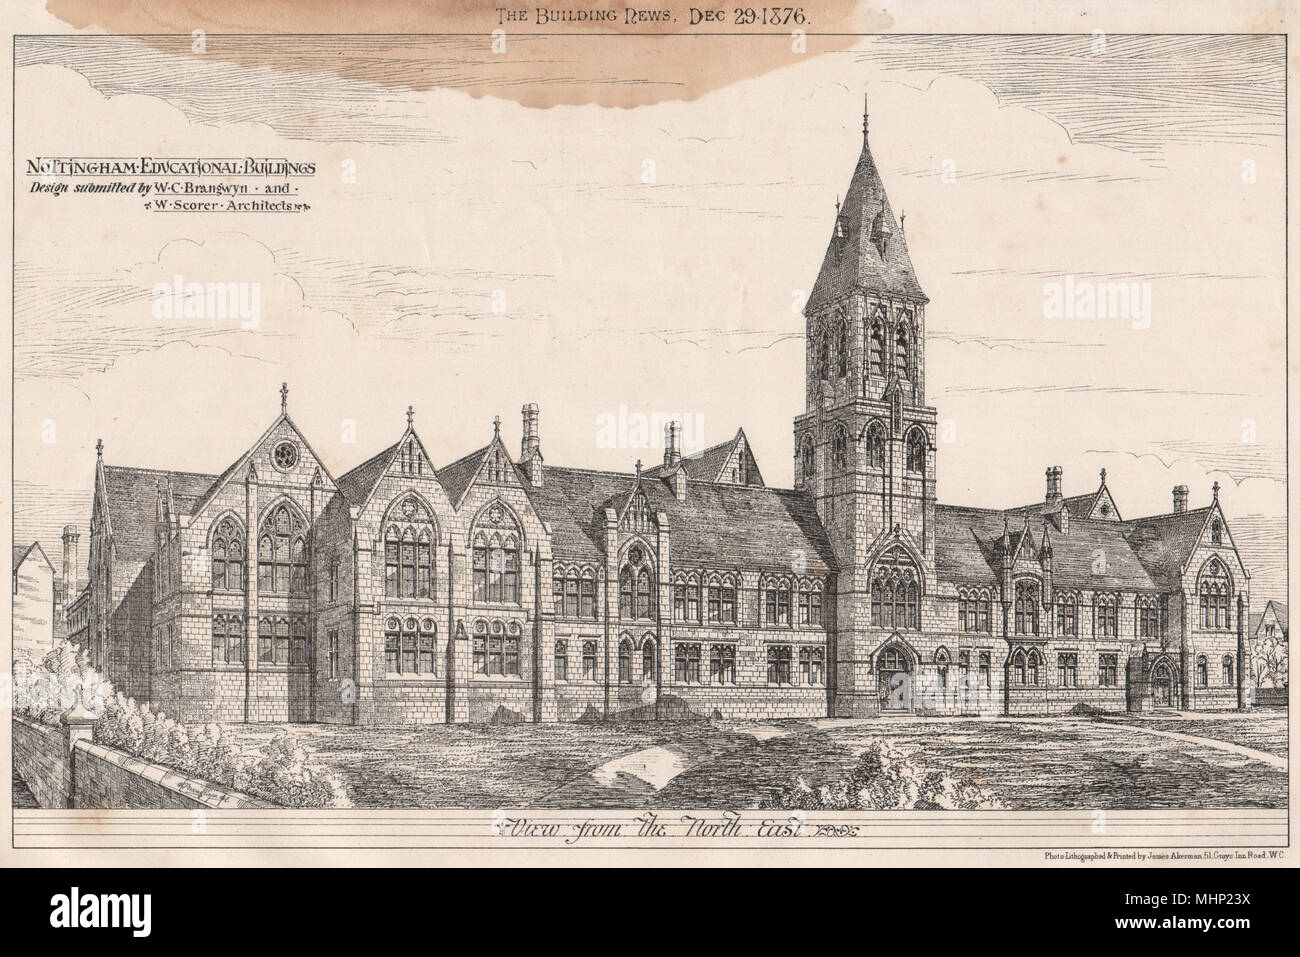 Nottingham Bildungseinrichtungen; Design von Brangwyn & Scorer Architekten 1876 Stockfoto